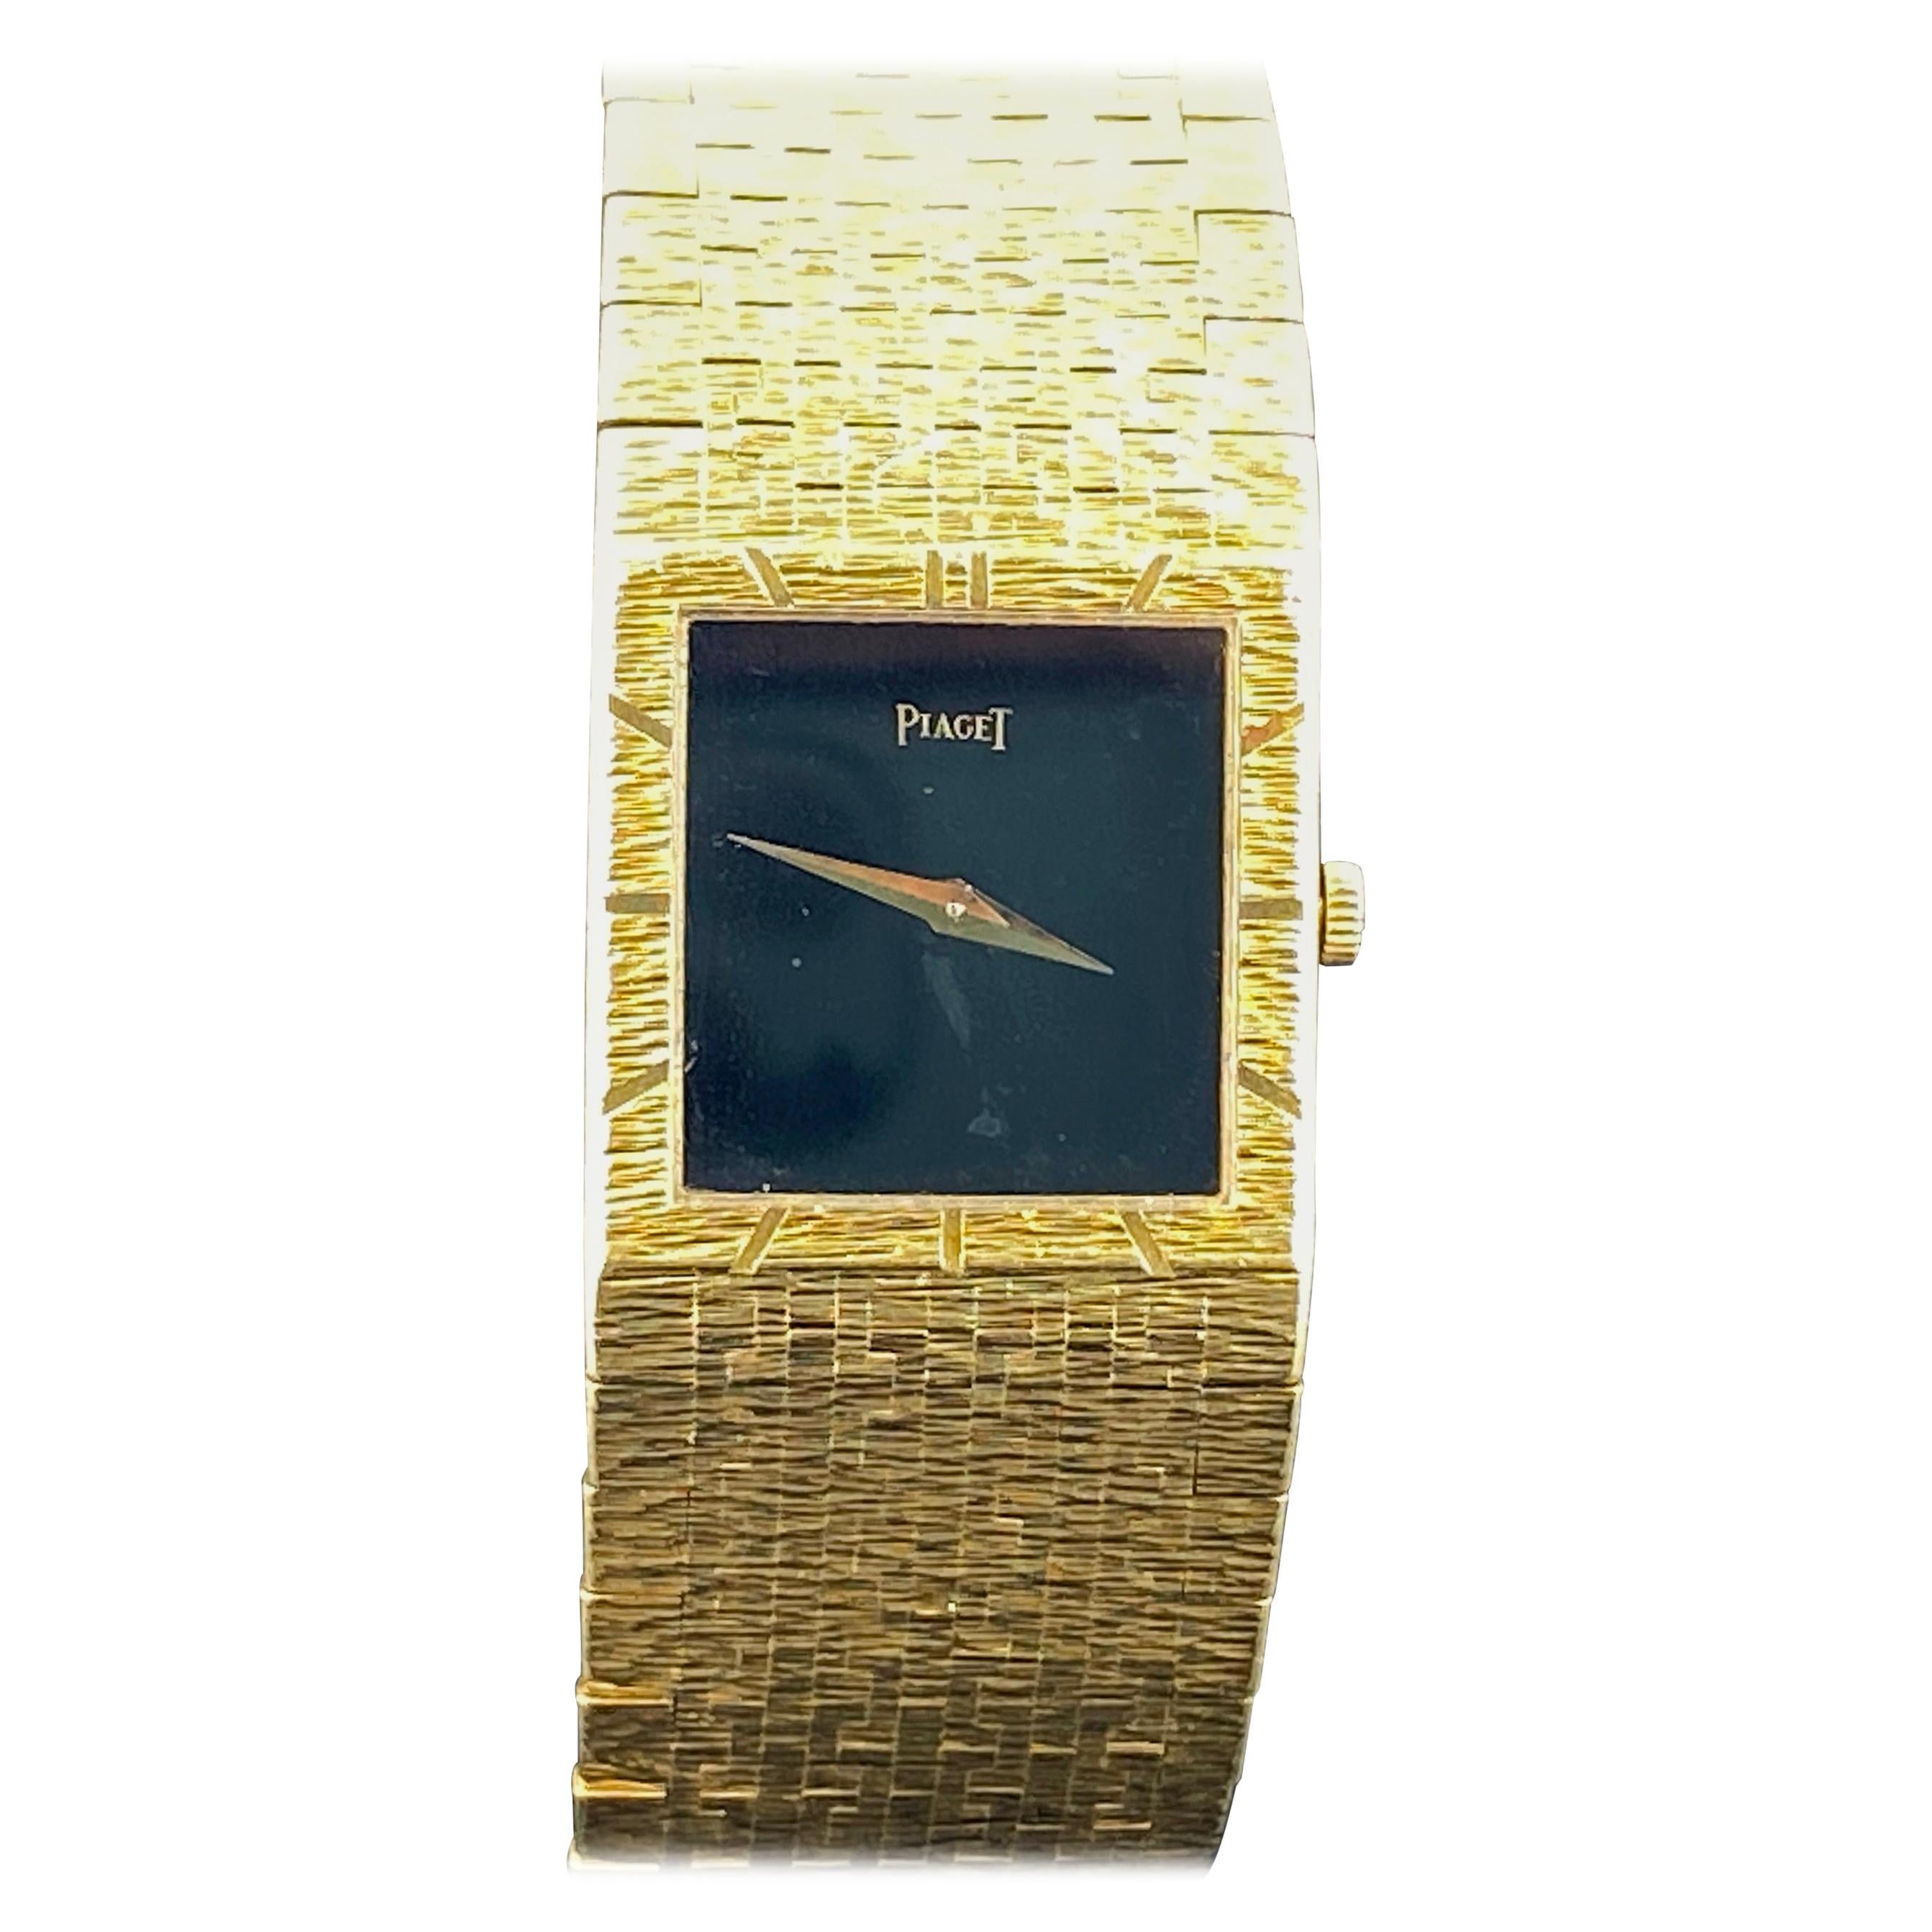 Piaget Ladies 18 Karat Yellow Gold "Depose" Watch